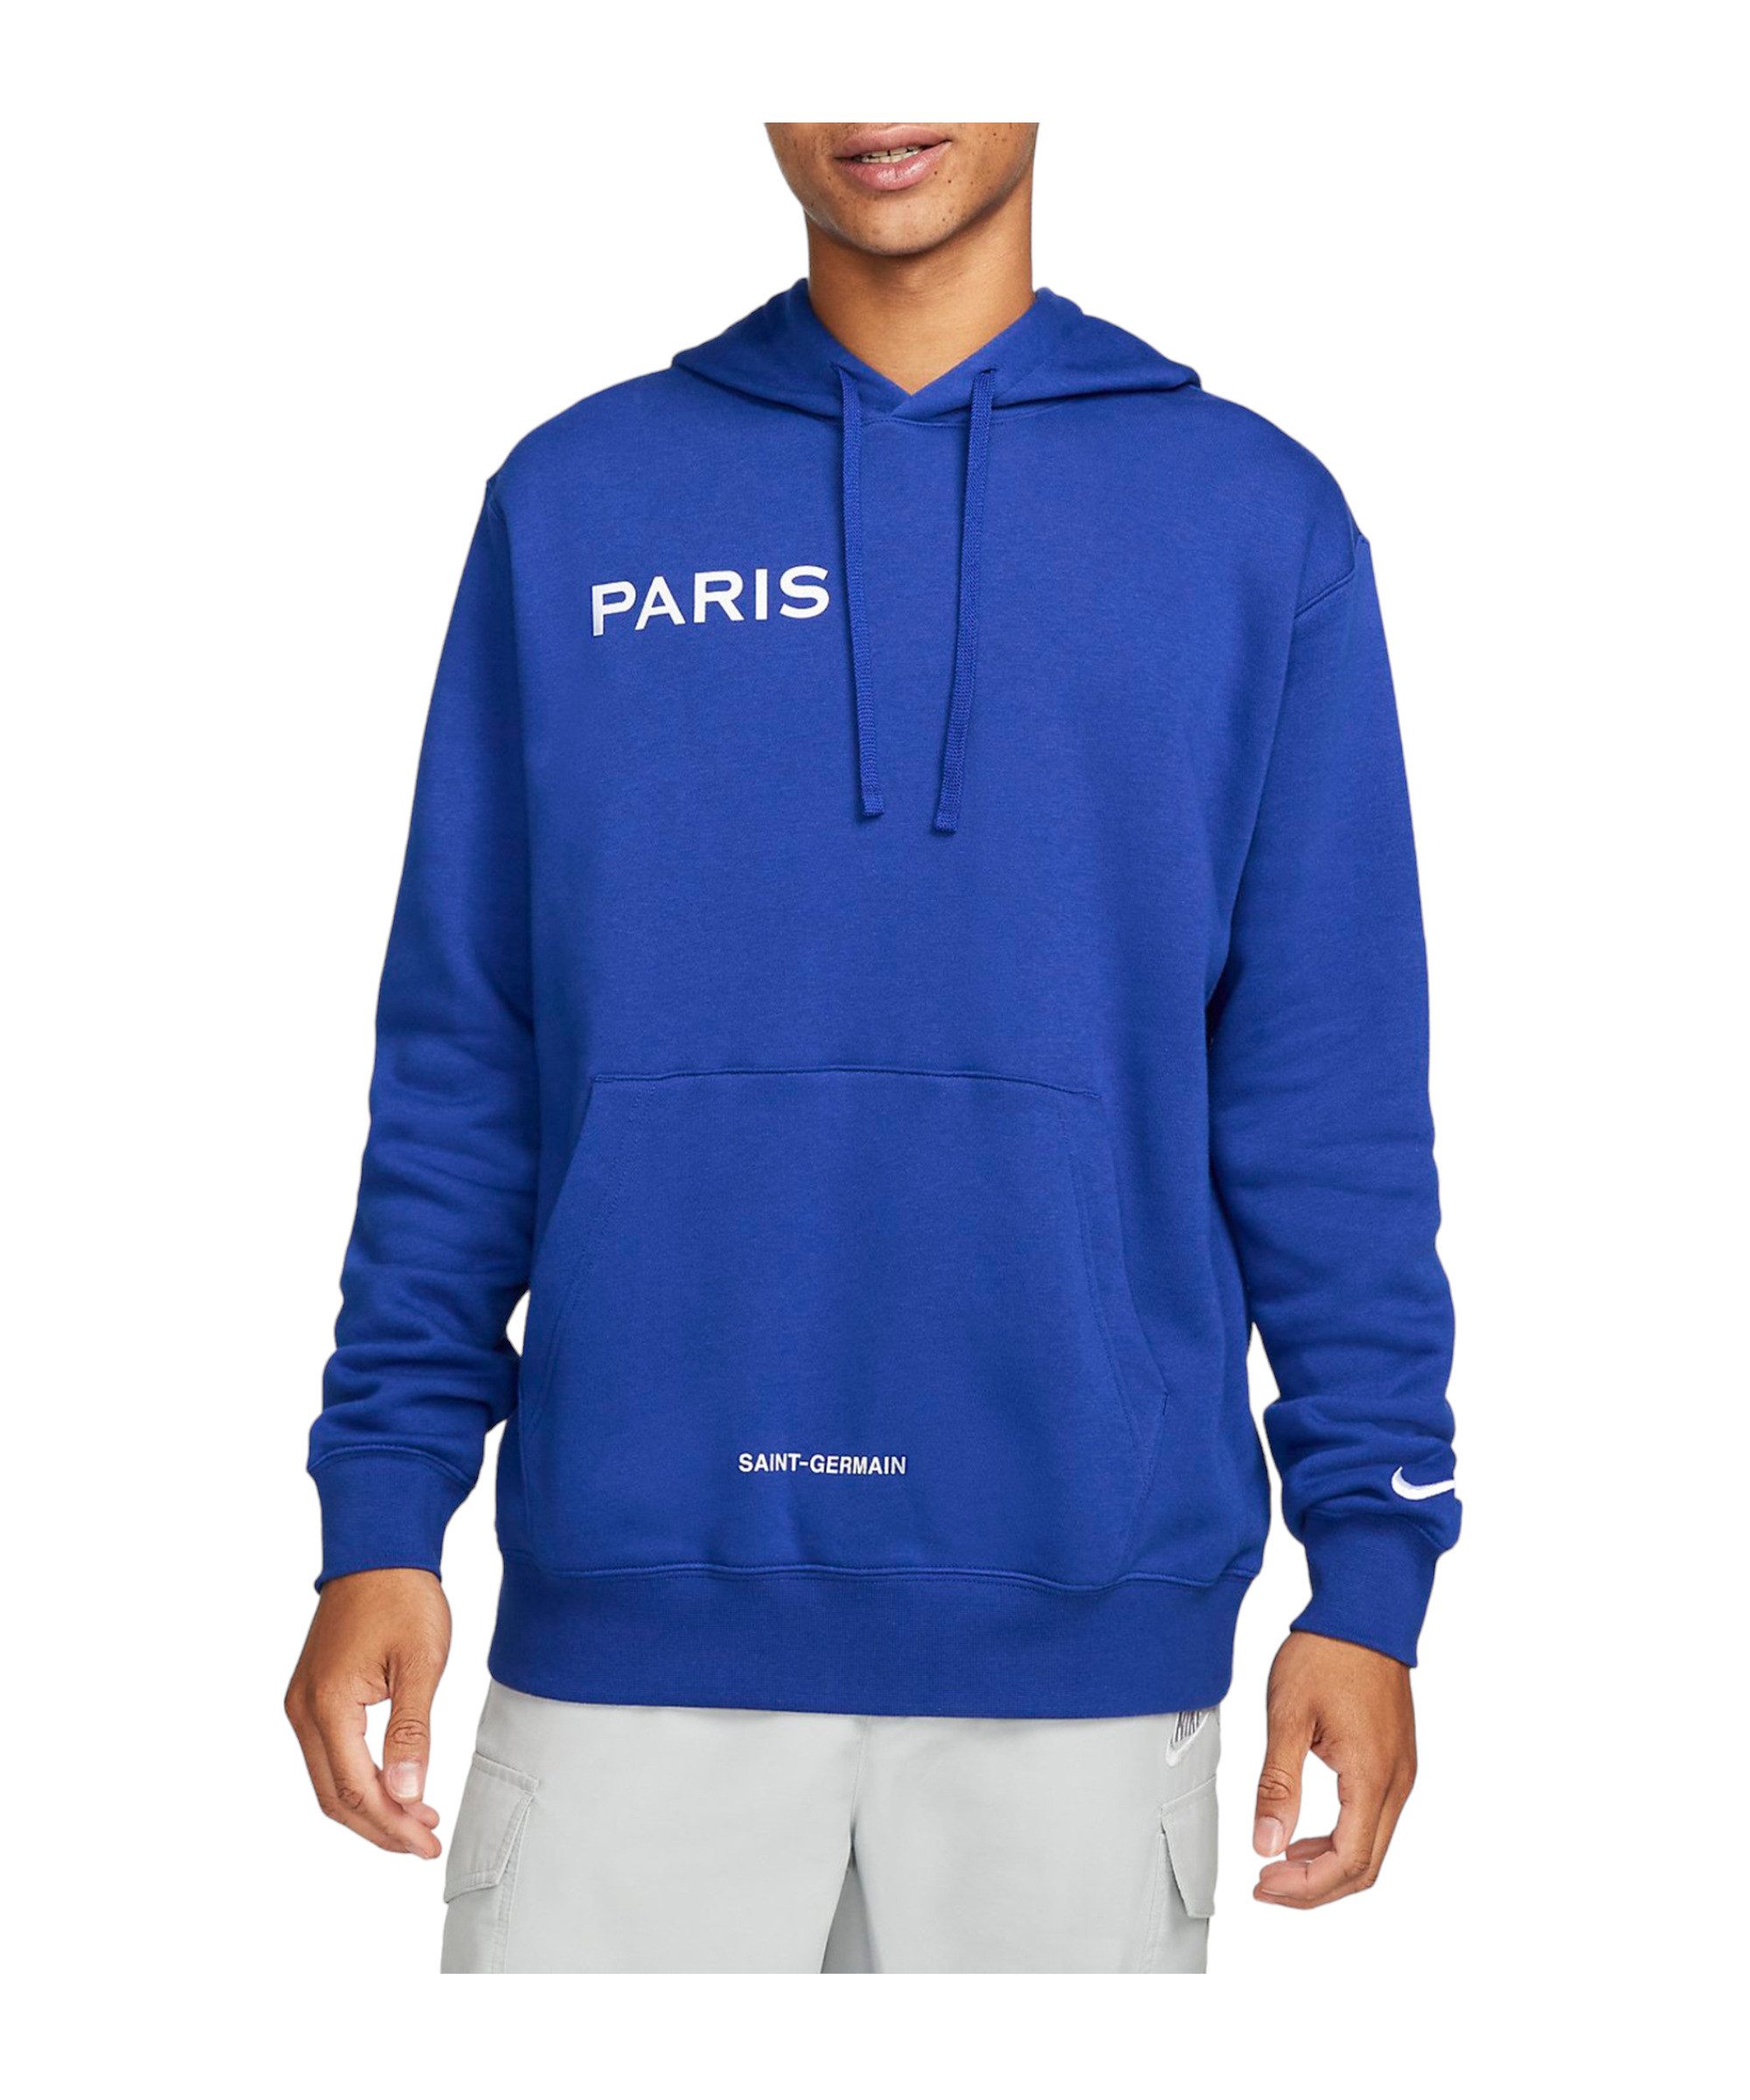 Nike Sweatshirt Paris St. Germain Fleece Hoody